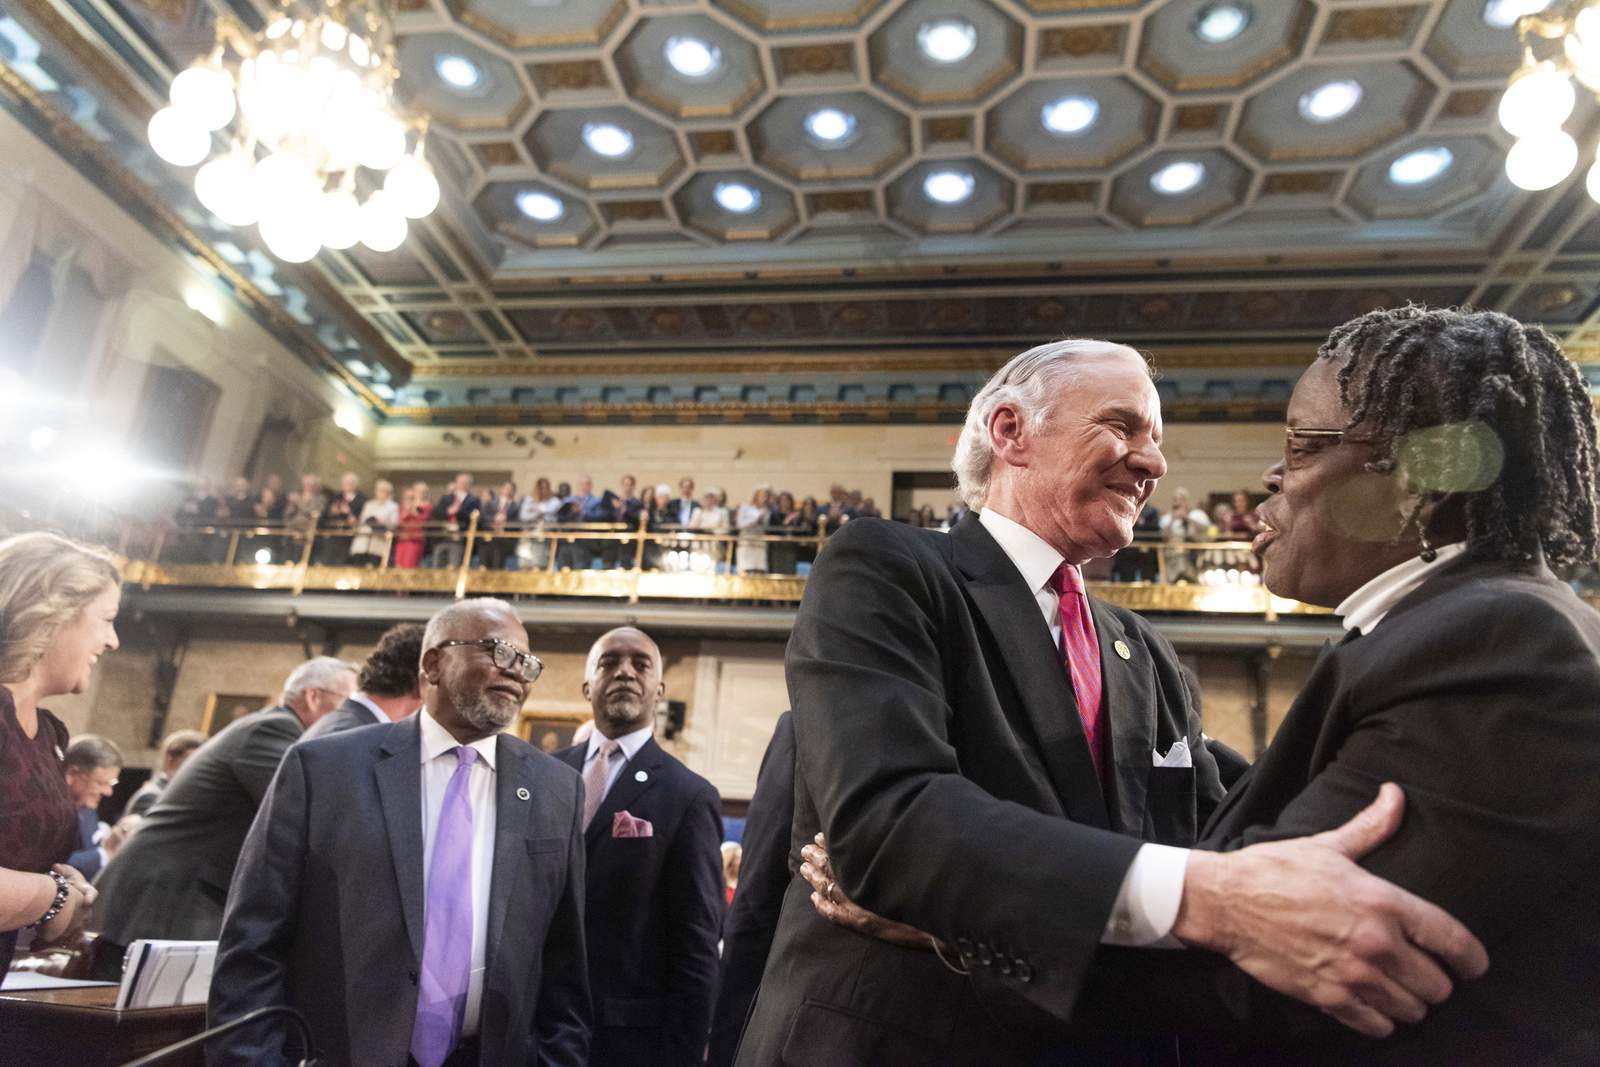 Steyer hires longest-serving SC House lawmaker as adviser